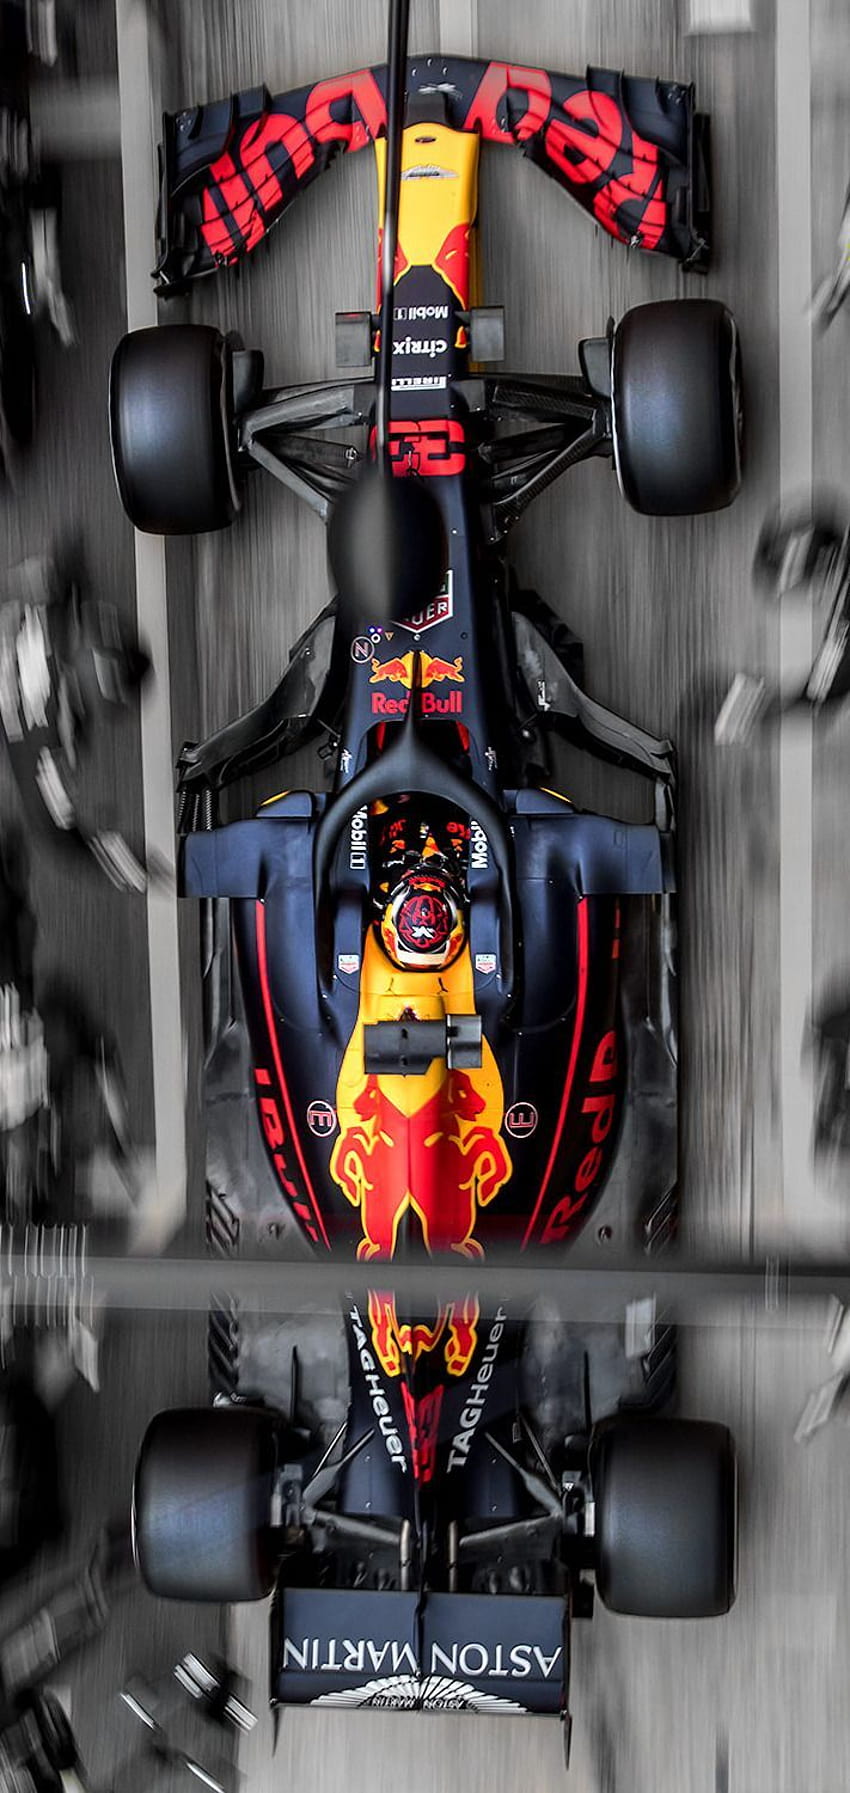 mybestcars: “Max Verstappen's RB14”, verstappen iphone HD phone wallpaper